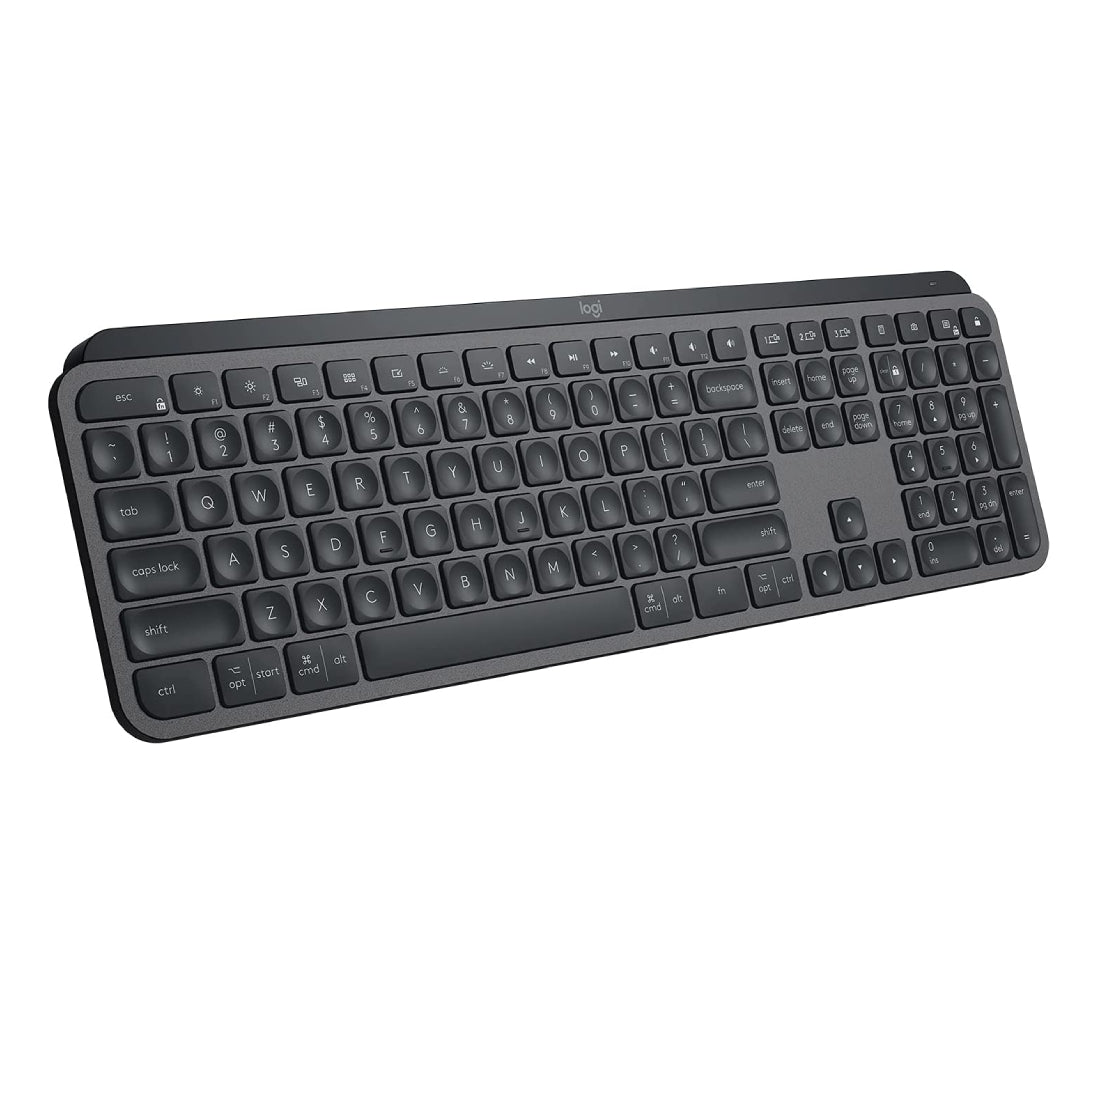 Logitech MX Keys Advanced Wireless Illuminated Keyboard - Graphite - Store 974 | ستور ٩٧٤